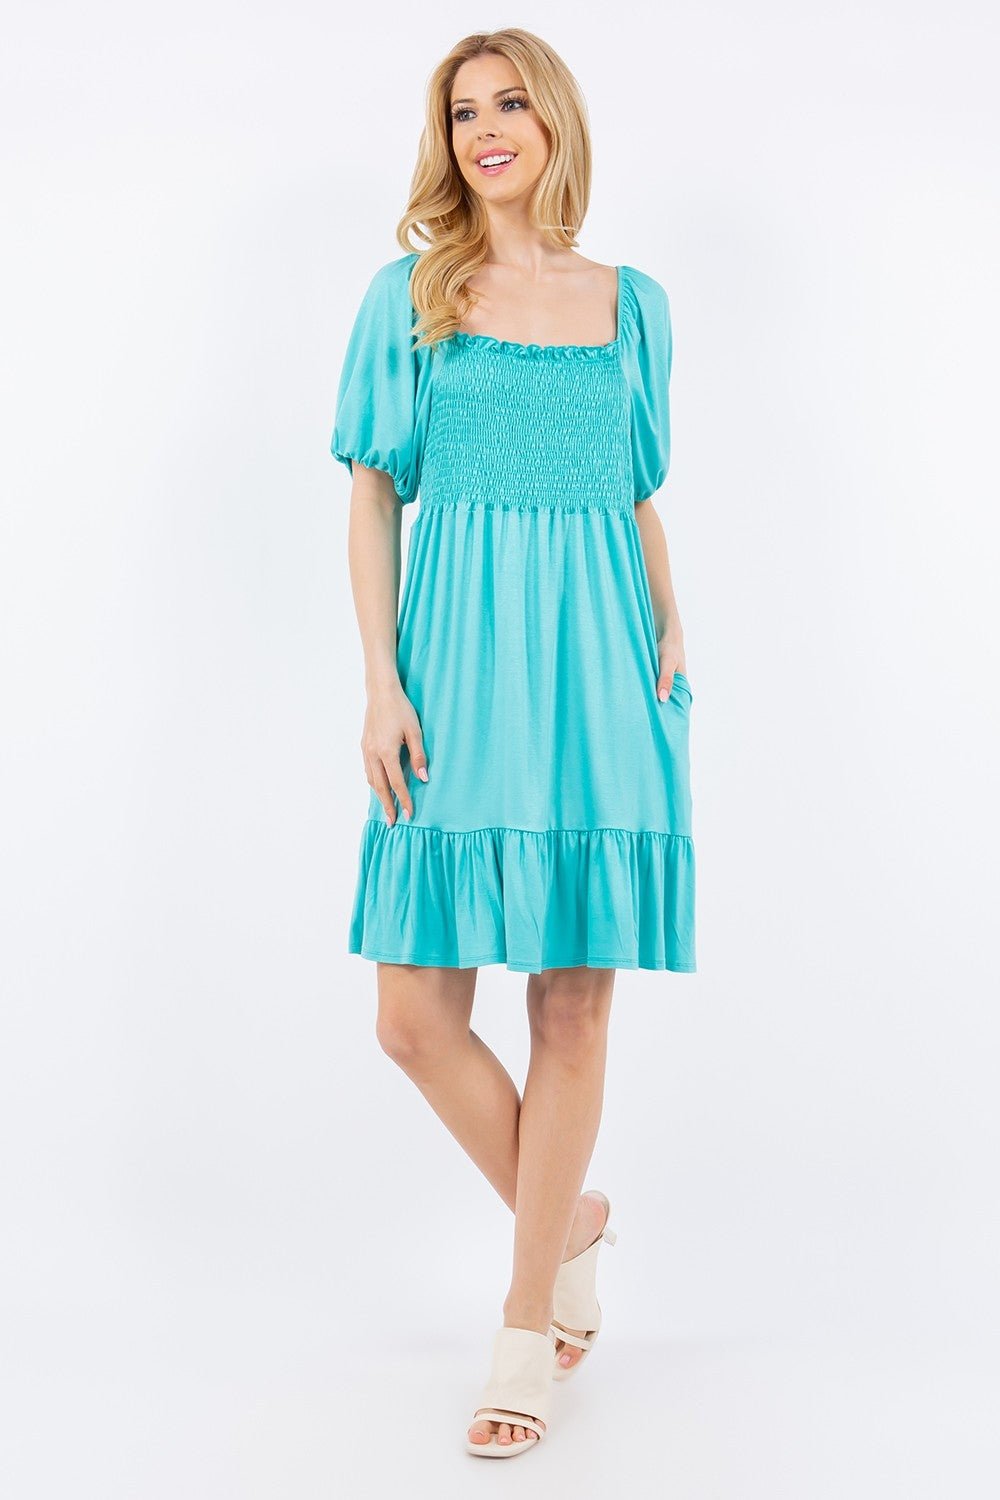 Celeste Full Size Ruffle Hem Short Sleeve Smocked Dress - Jaazi Intl